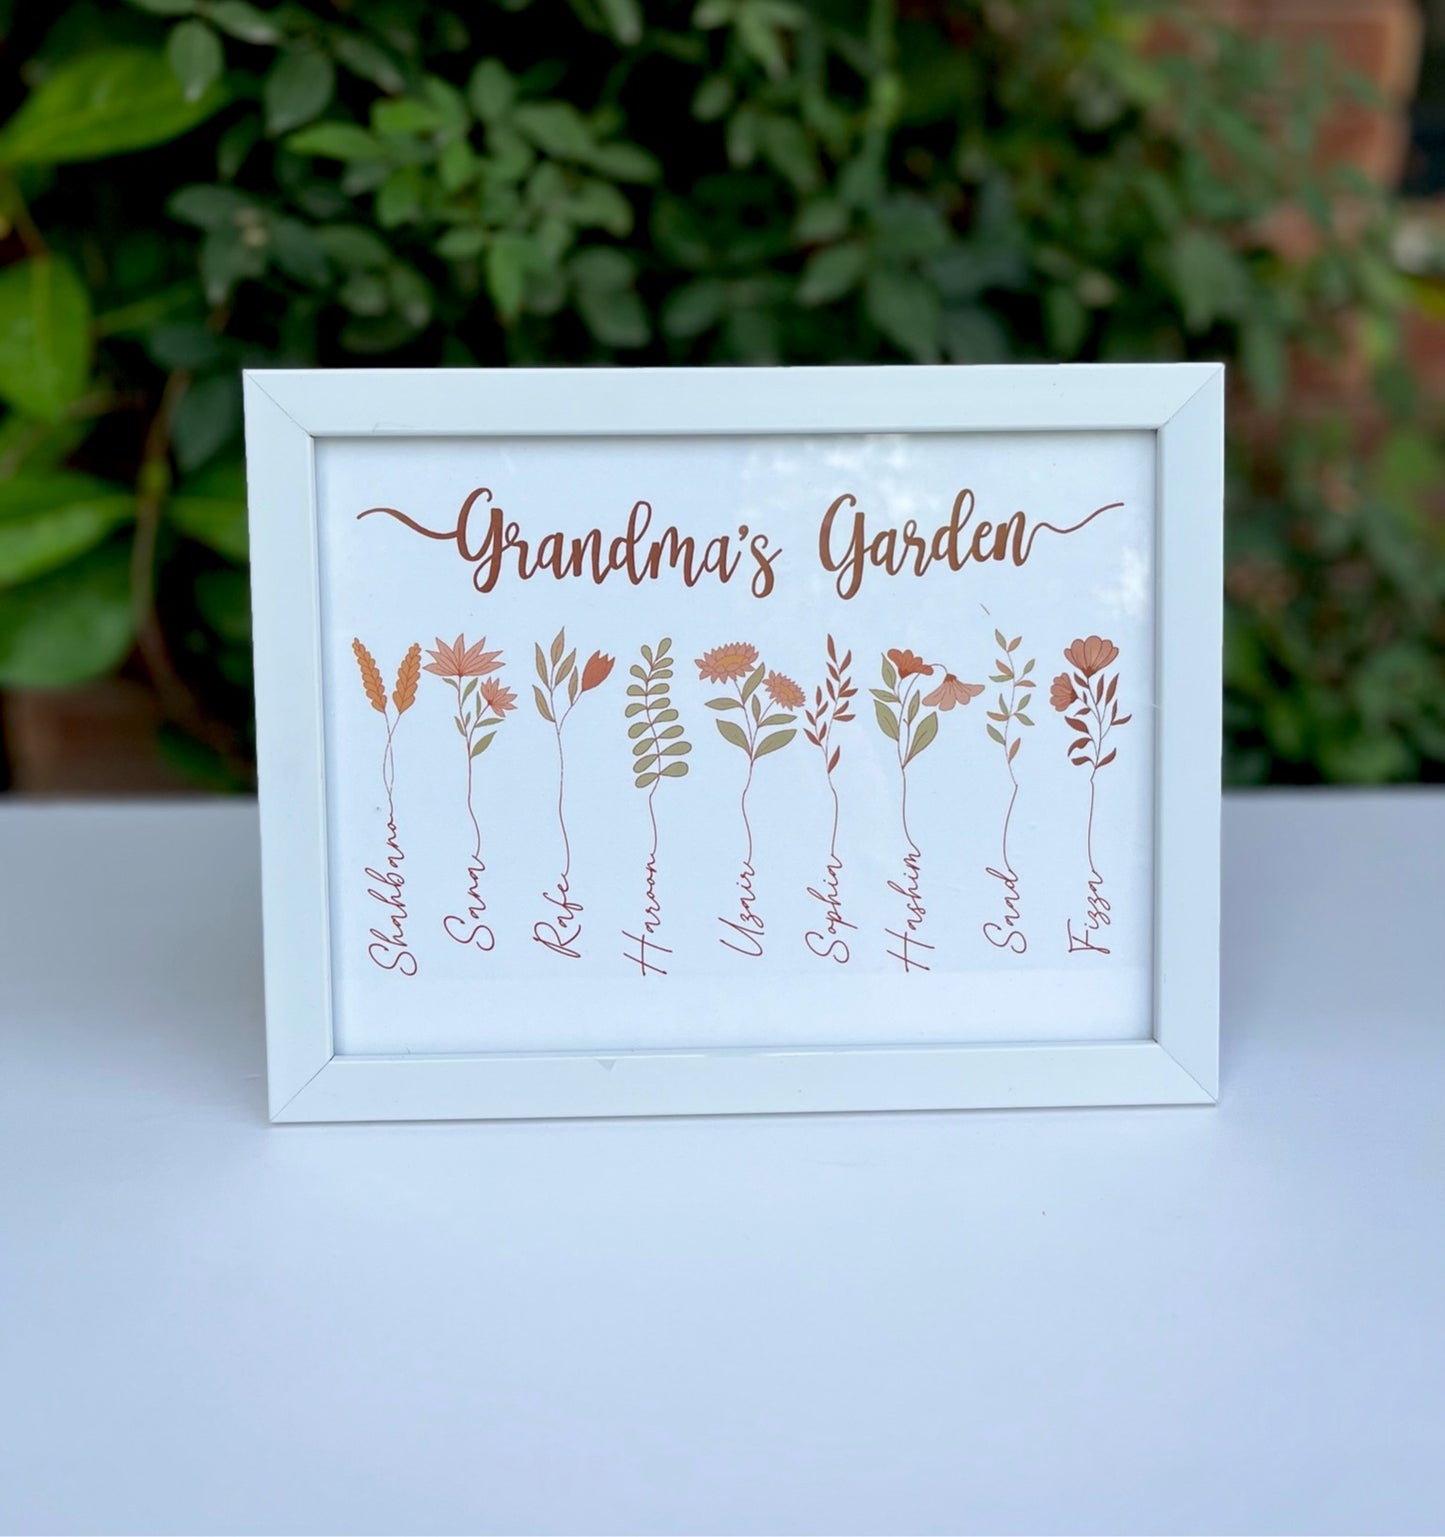 Grandma’s Garden Frame